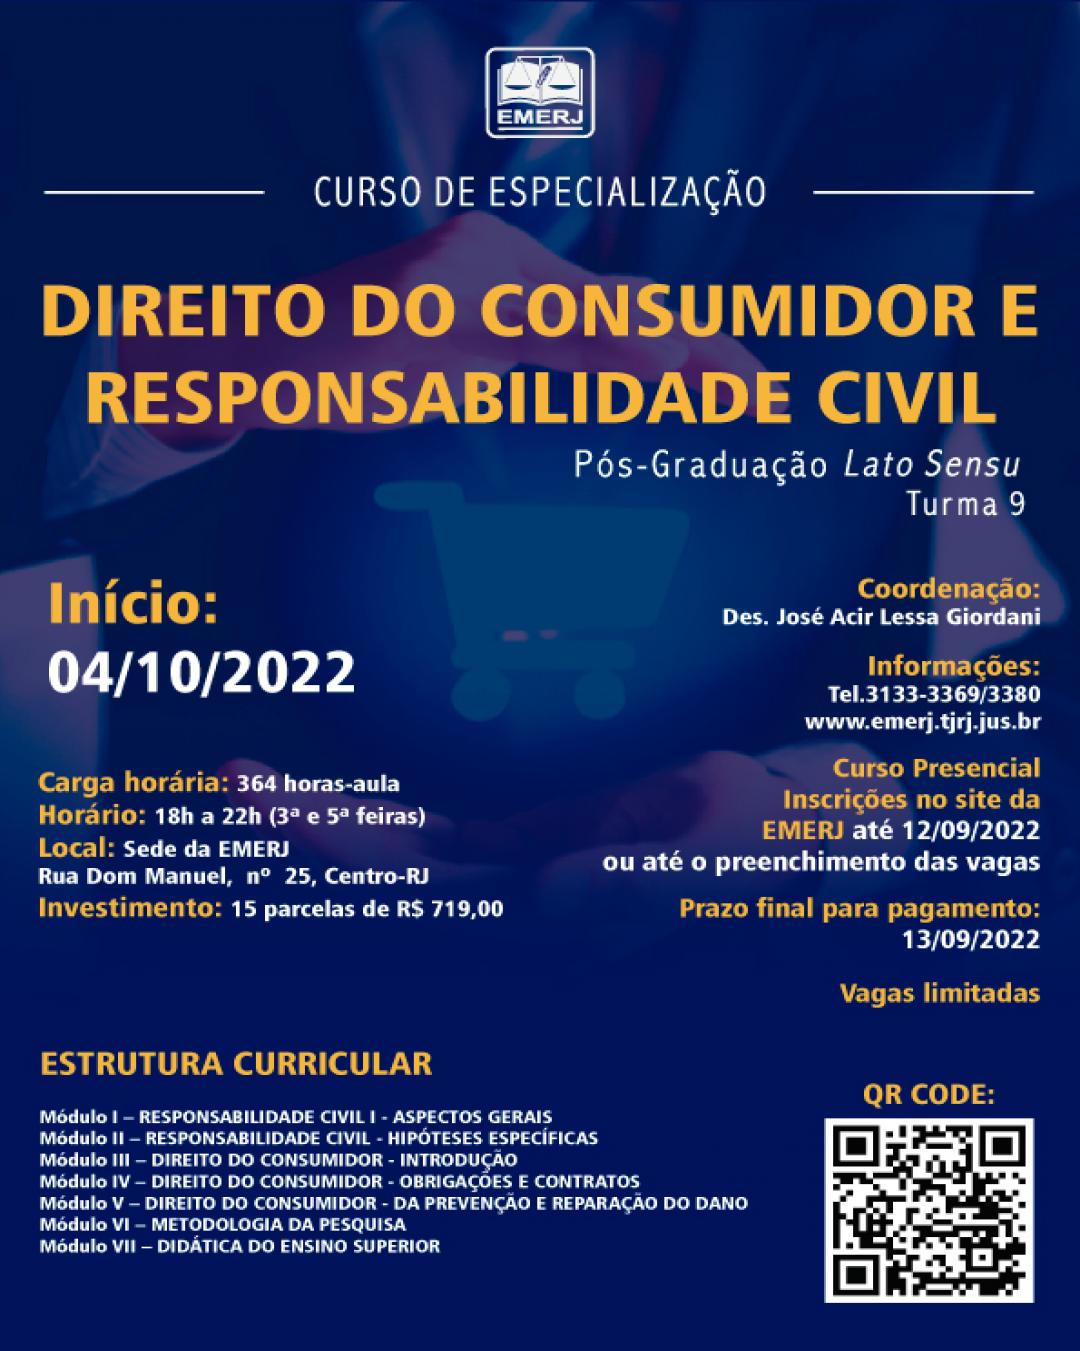 Imagem do banner principal do curso - CURSO DE ESPECIALIZAÇÃO EM DIREITO DO CONSUMIDOR E  RESPONSABILIDADE CIVIL – TURMA 9